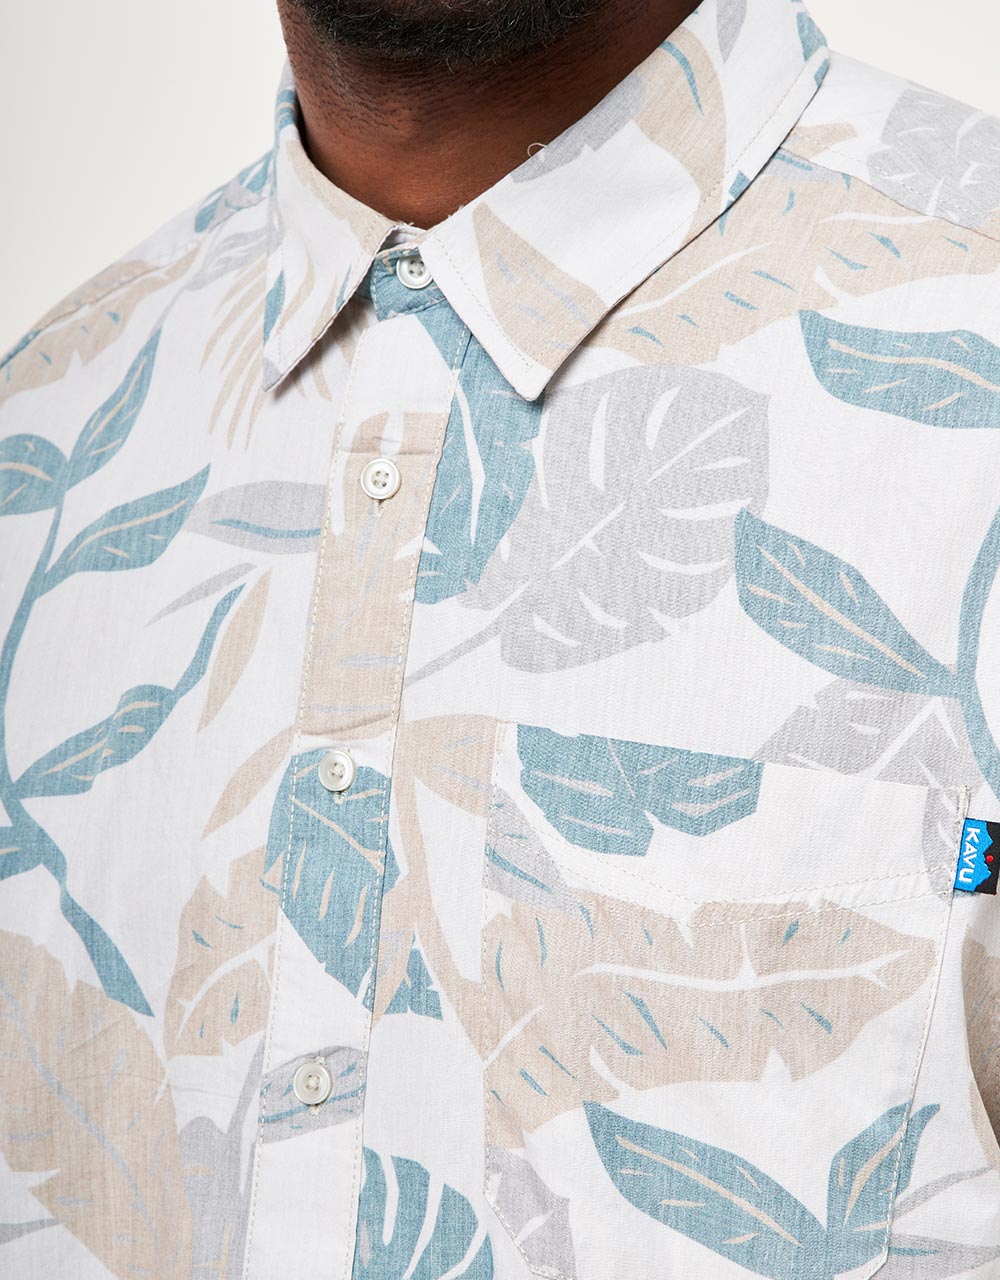 Kavu Topspot S/S Shirt - Frond Palm